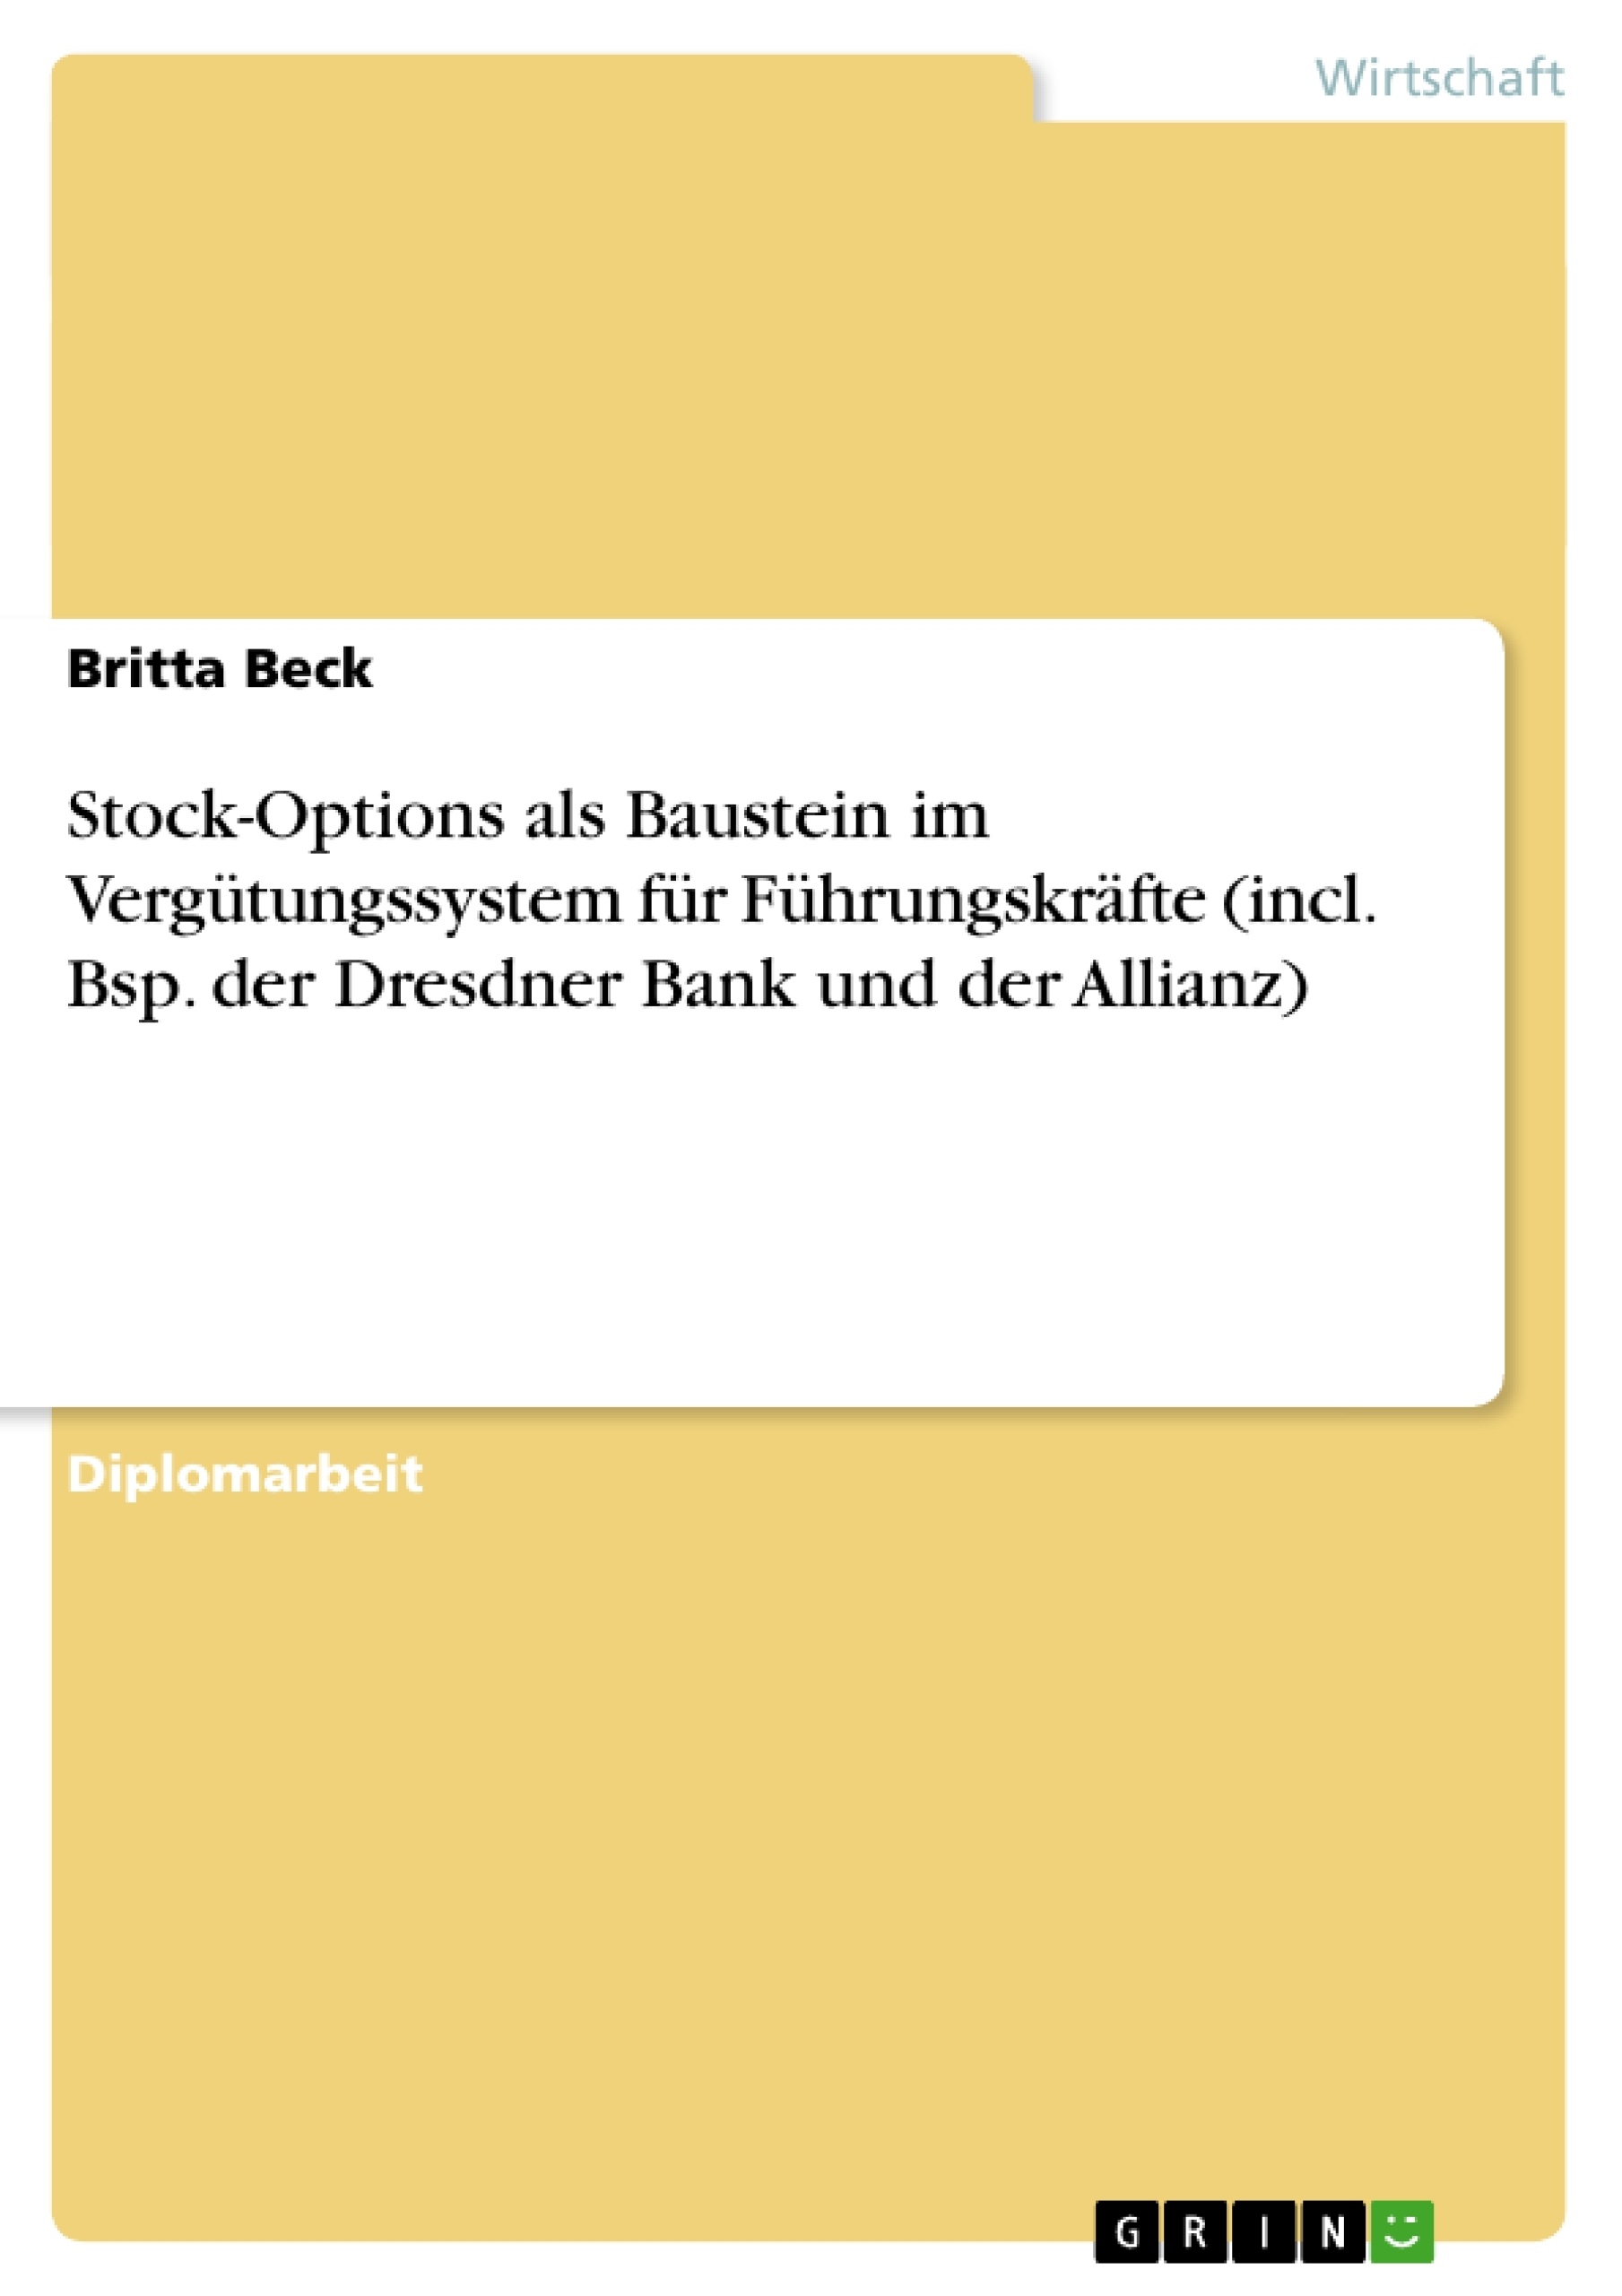 Title: Stock-Options als Baustein im Vergütungssystem für Führungskräfte (incl. Bsp. der Dresdner Bank und der Allianz)